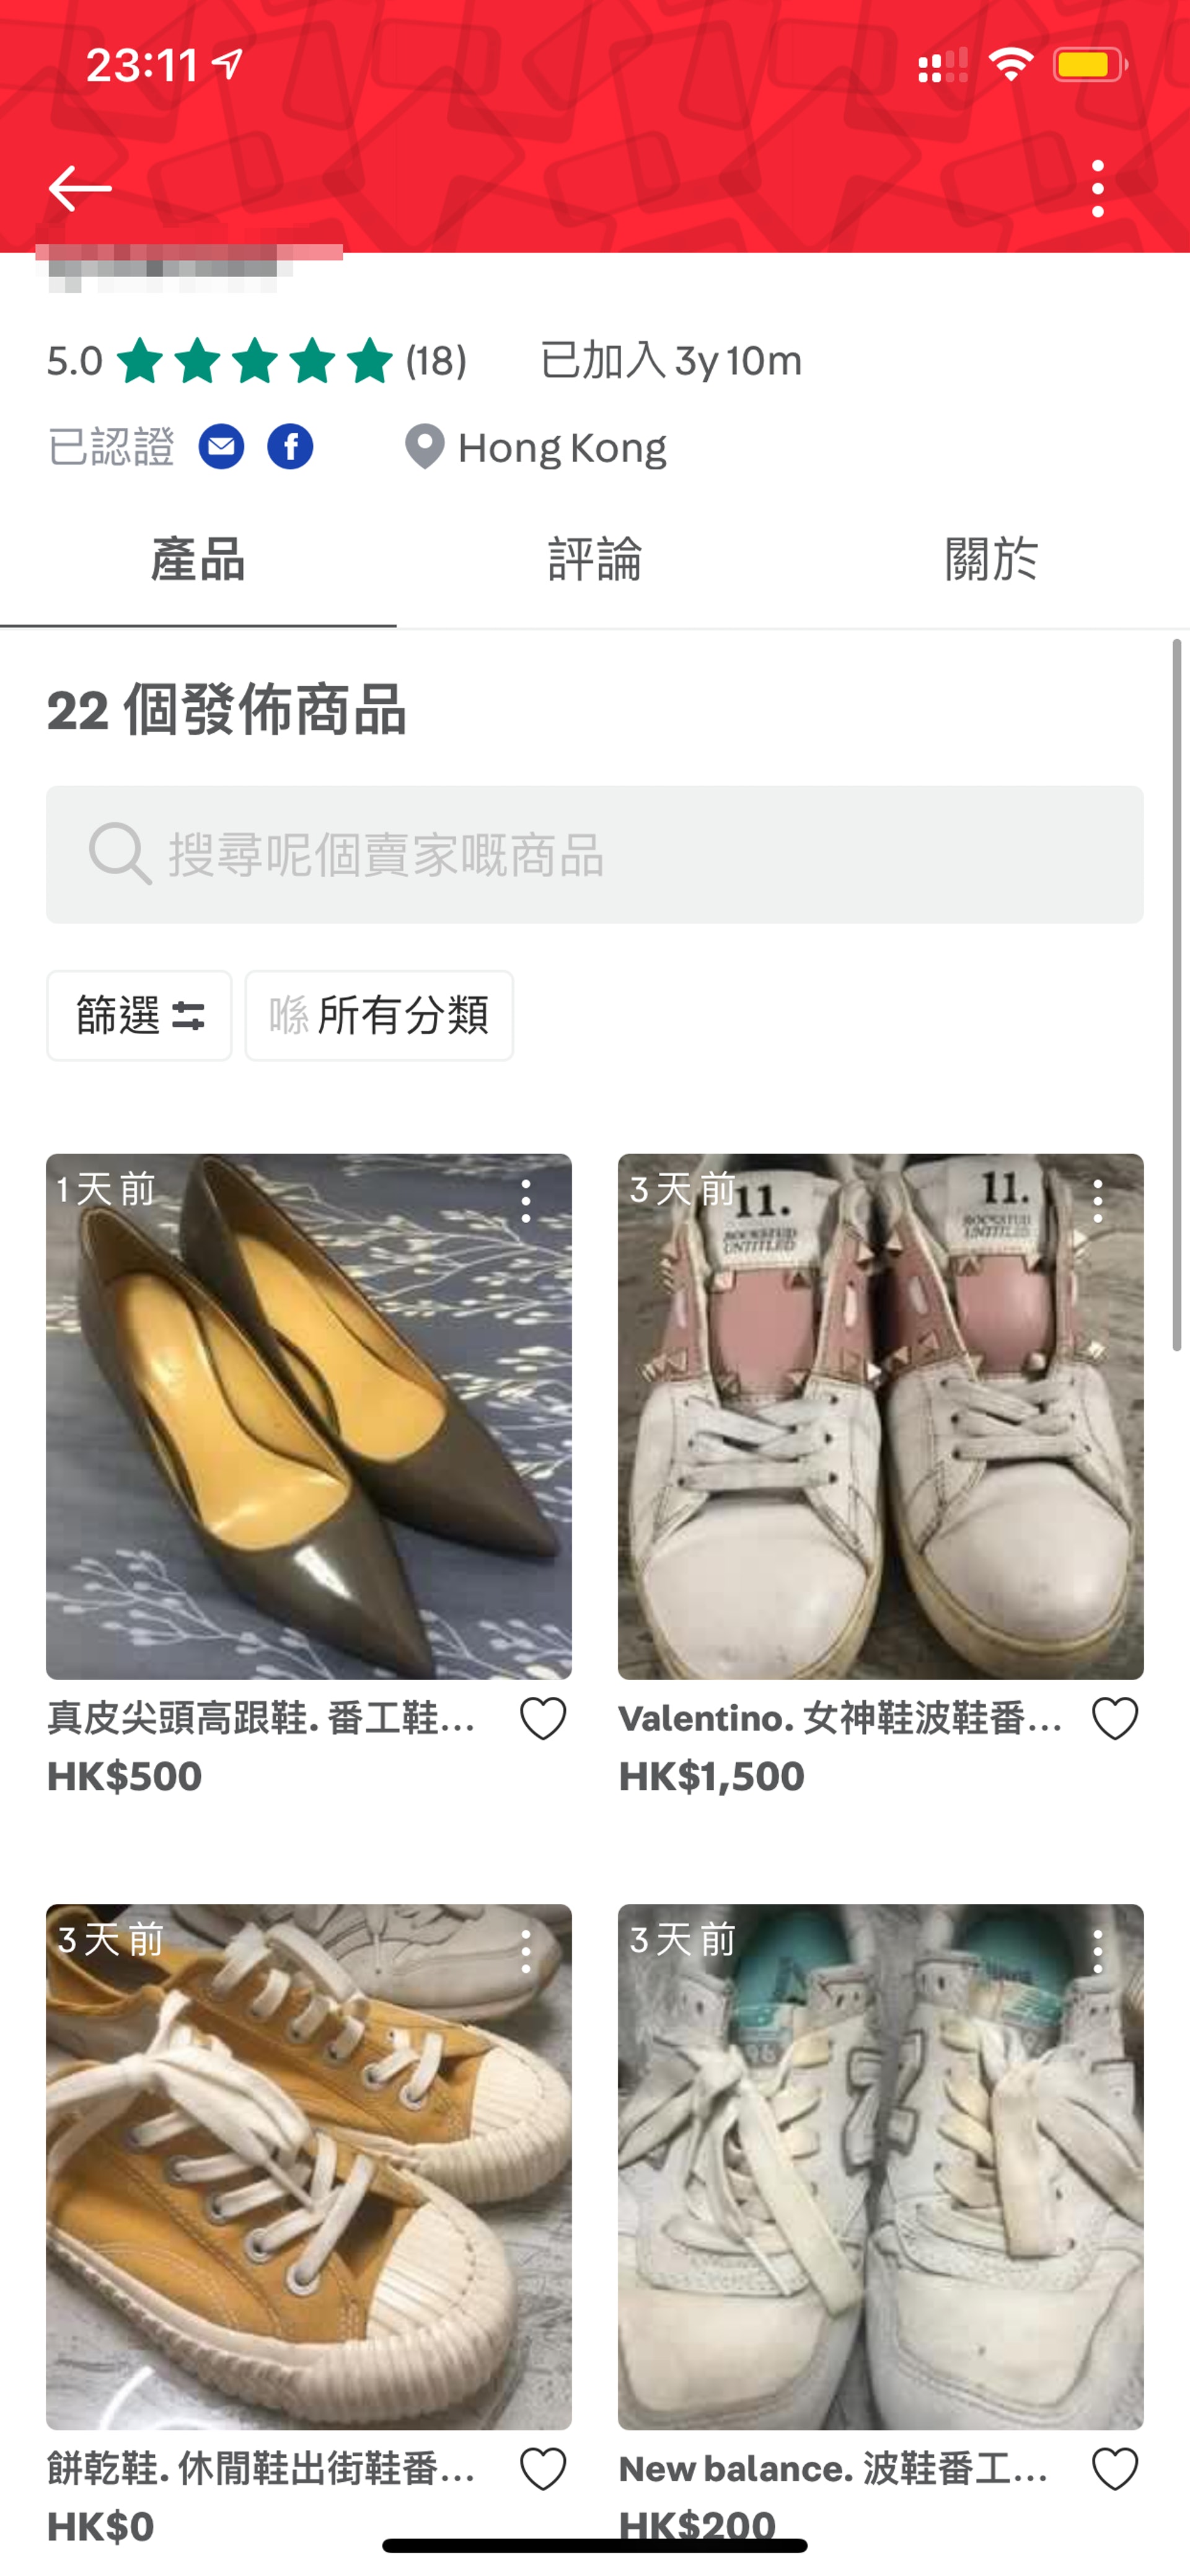 該賣家亦有將其他波鞋或布鞋放上平台出售。（連登討論區圖片）